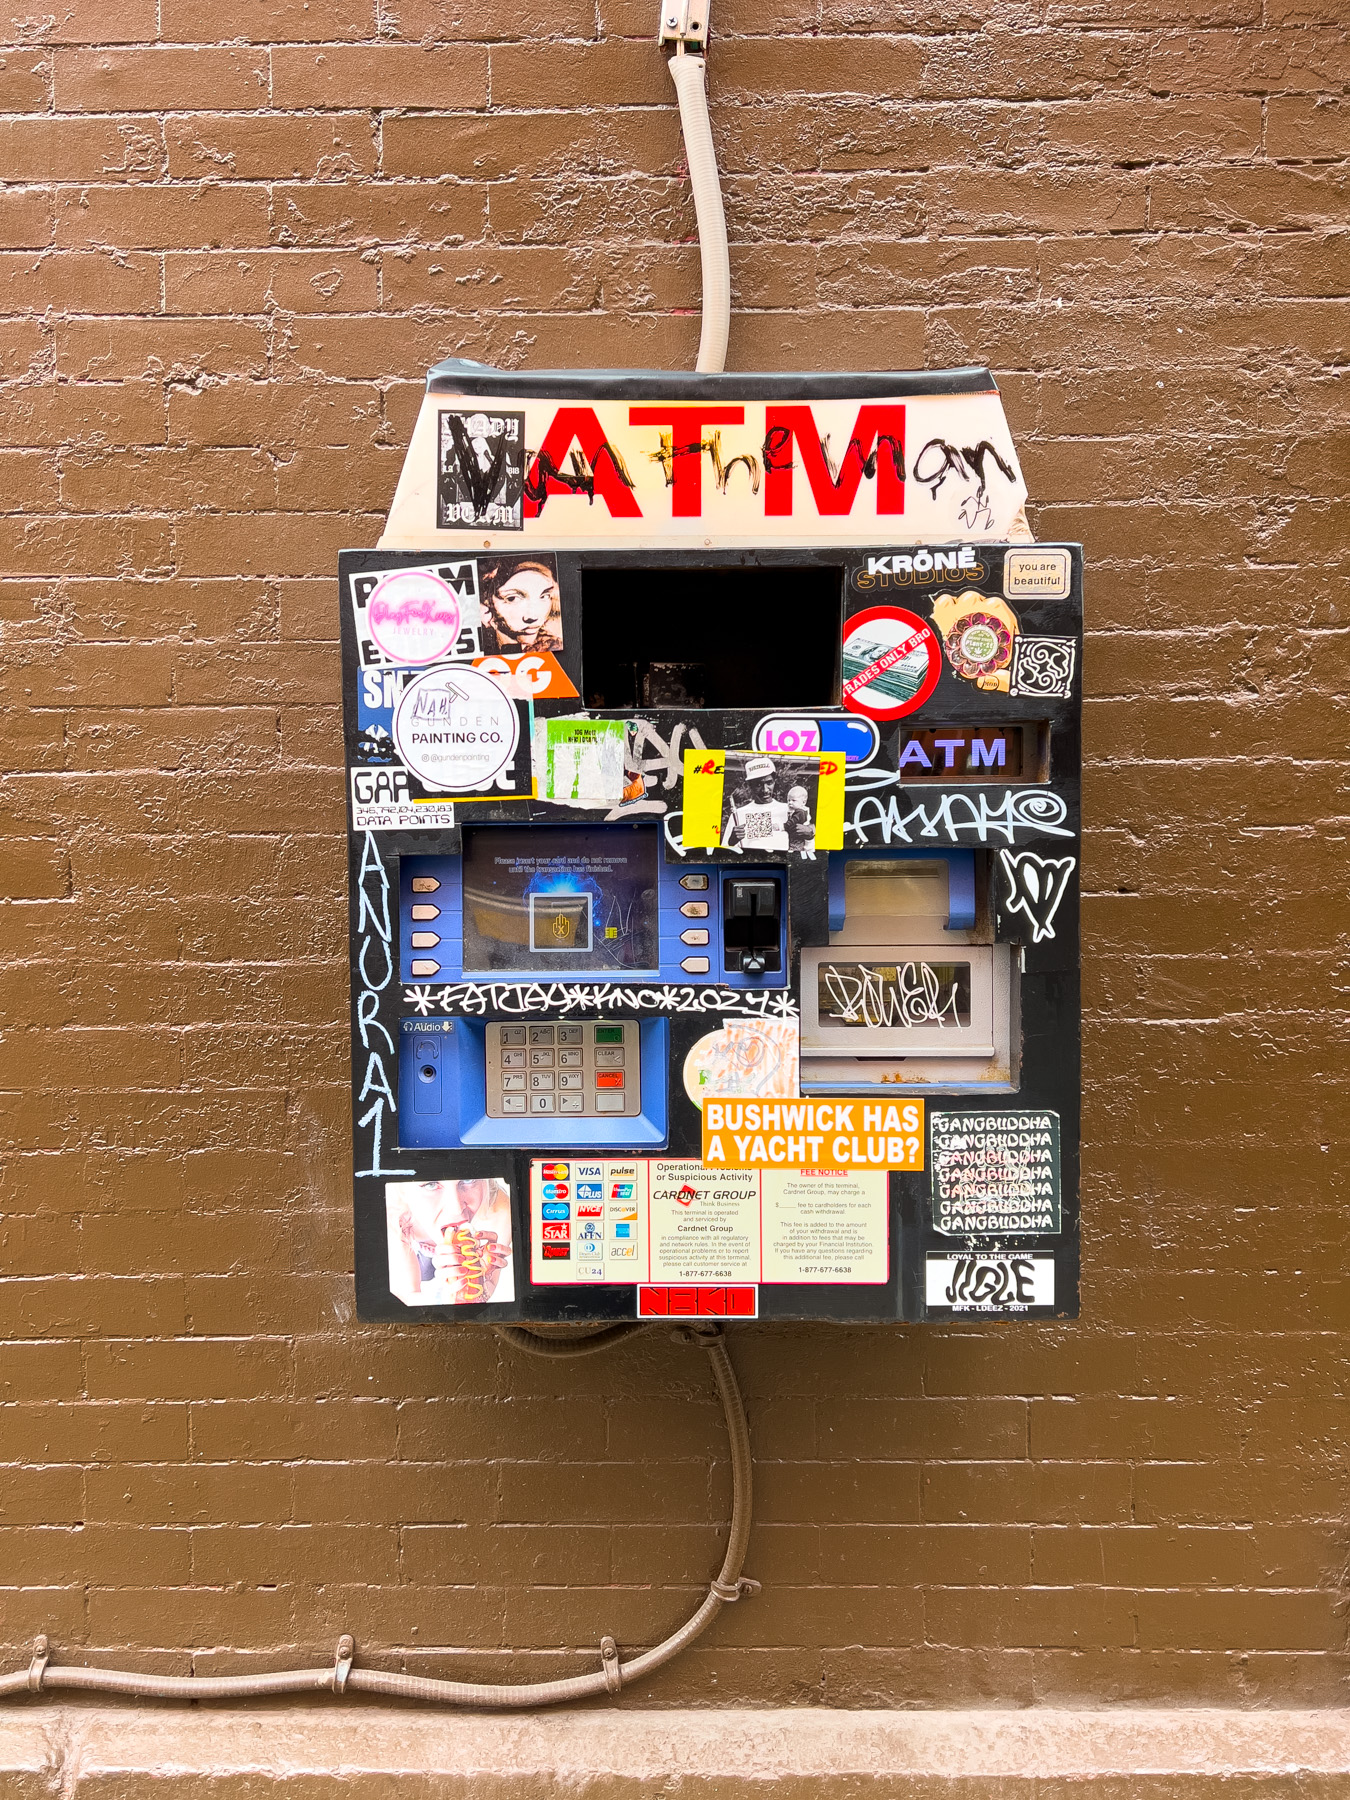 Distributeur de billets ATM